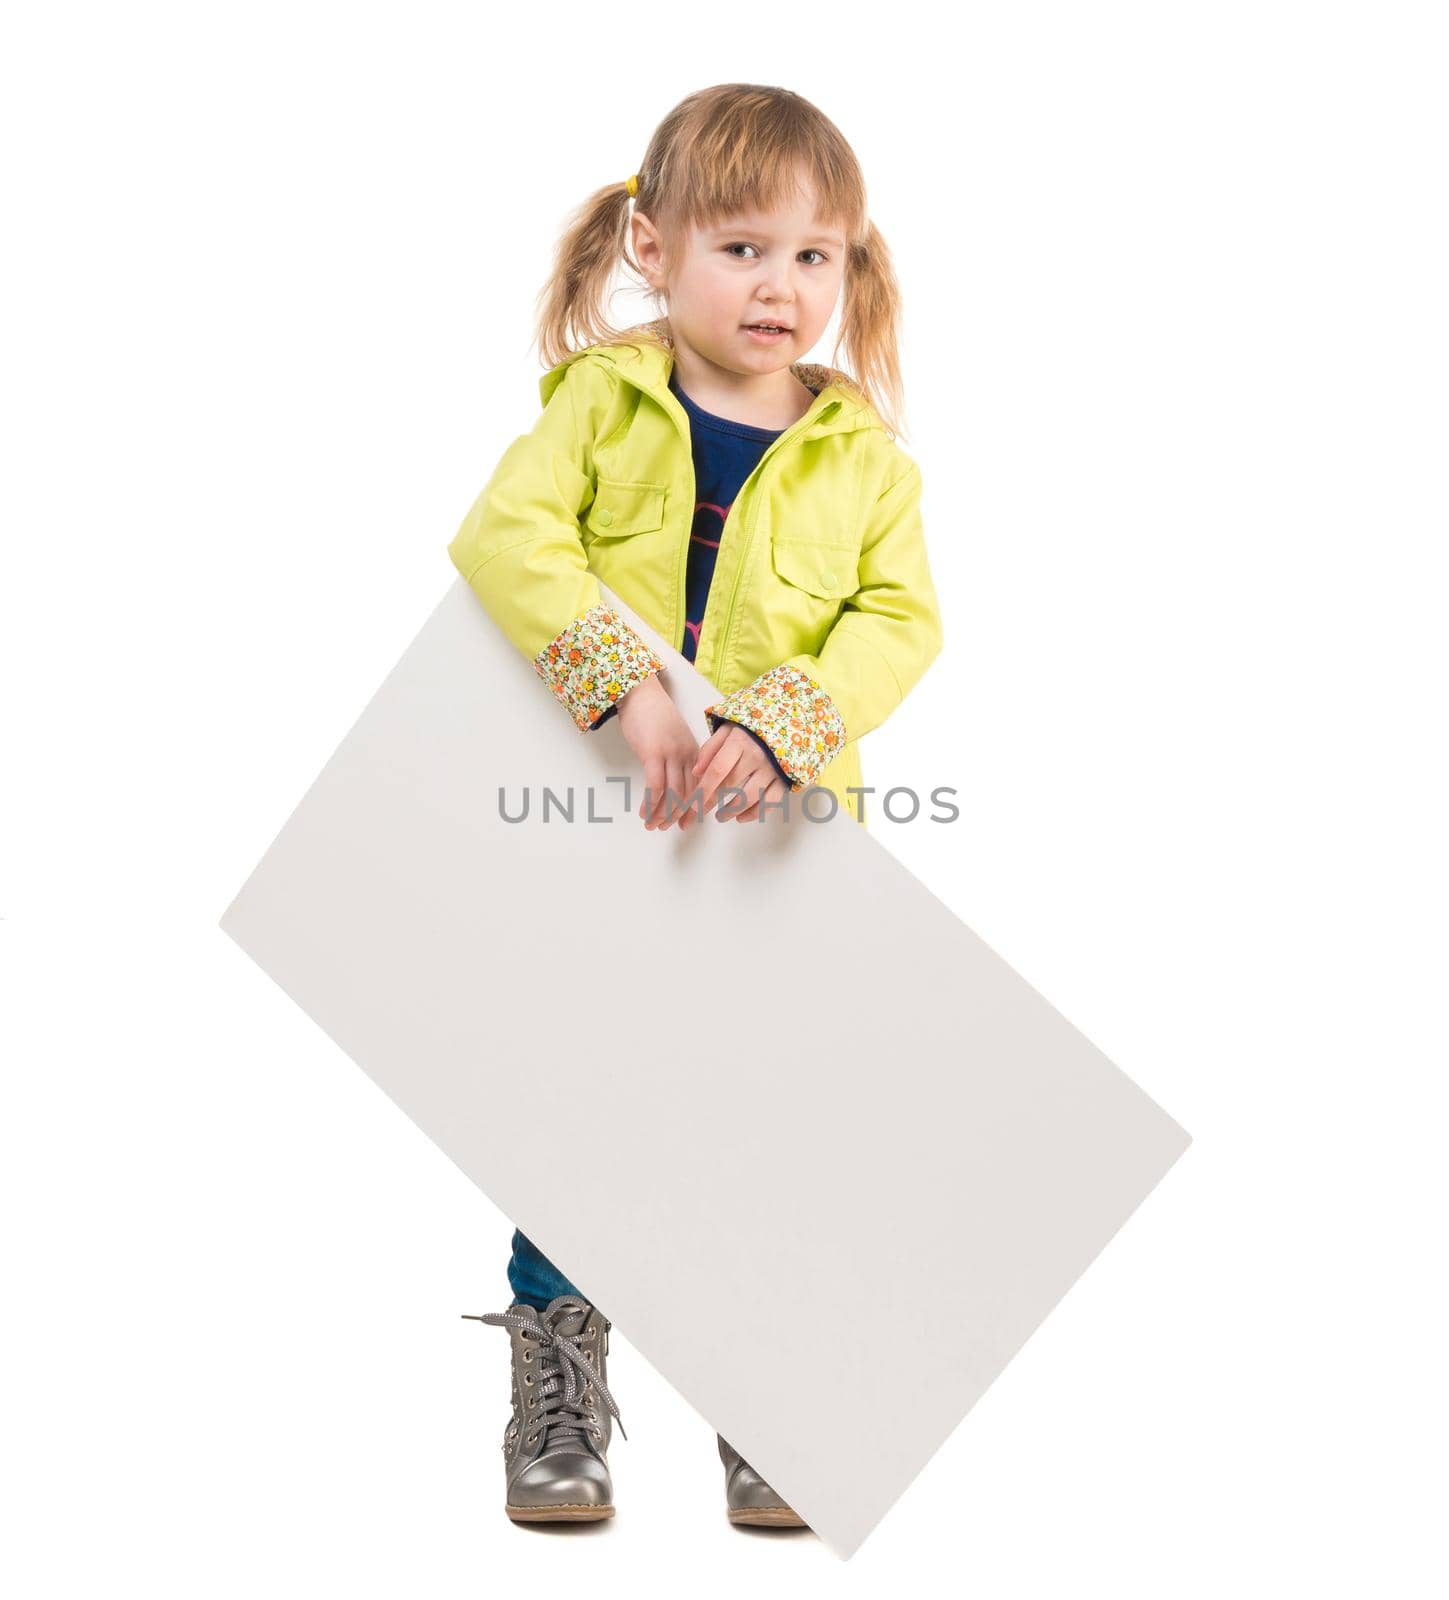 cute little girl with blank sheet in hands by tan4ikk1